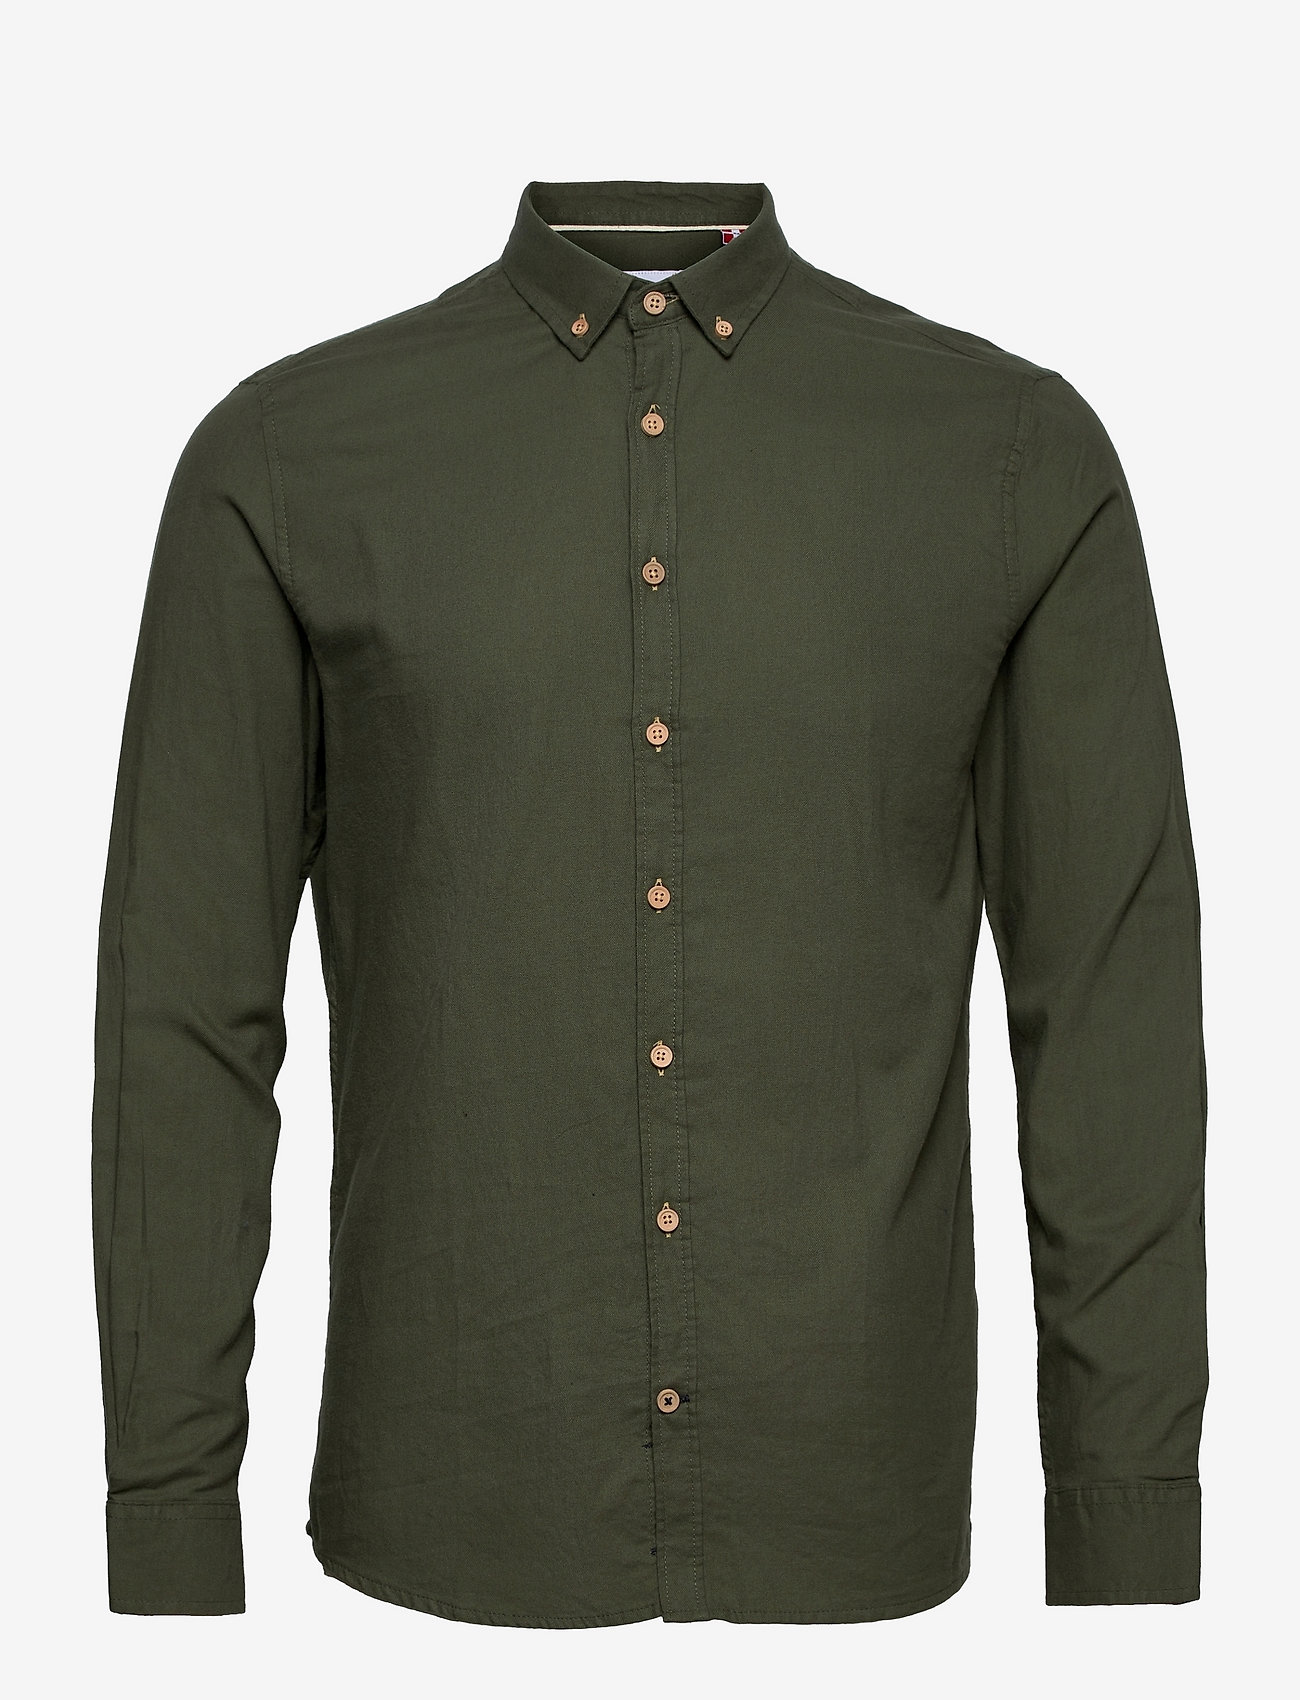 Kronstadt - Dean Diego Cotton shirt - basic overhemden - army - 0